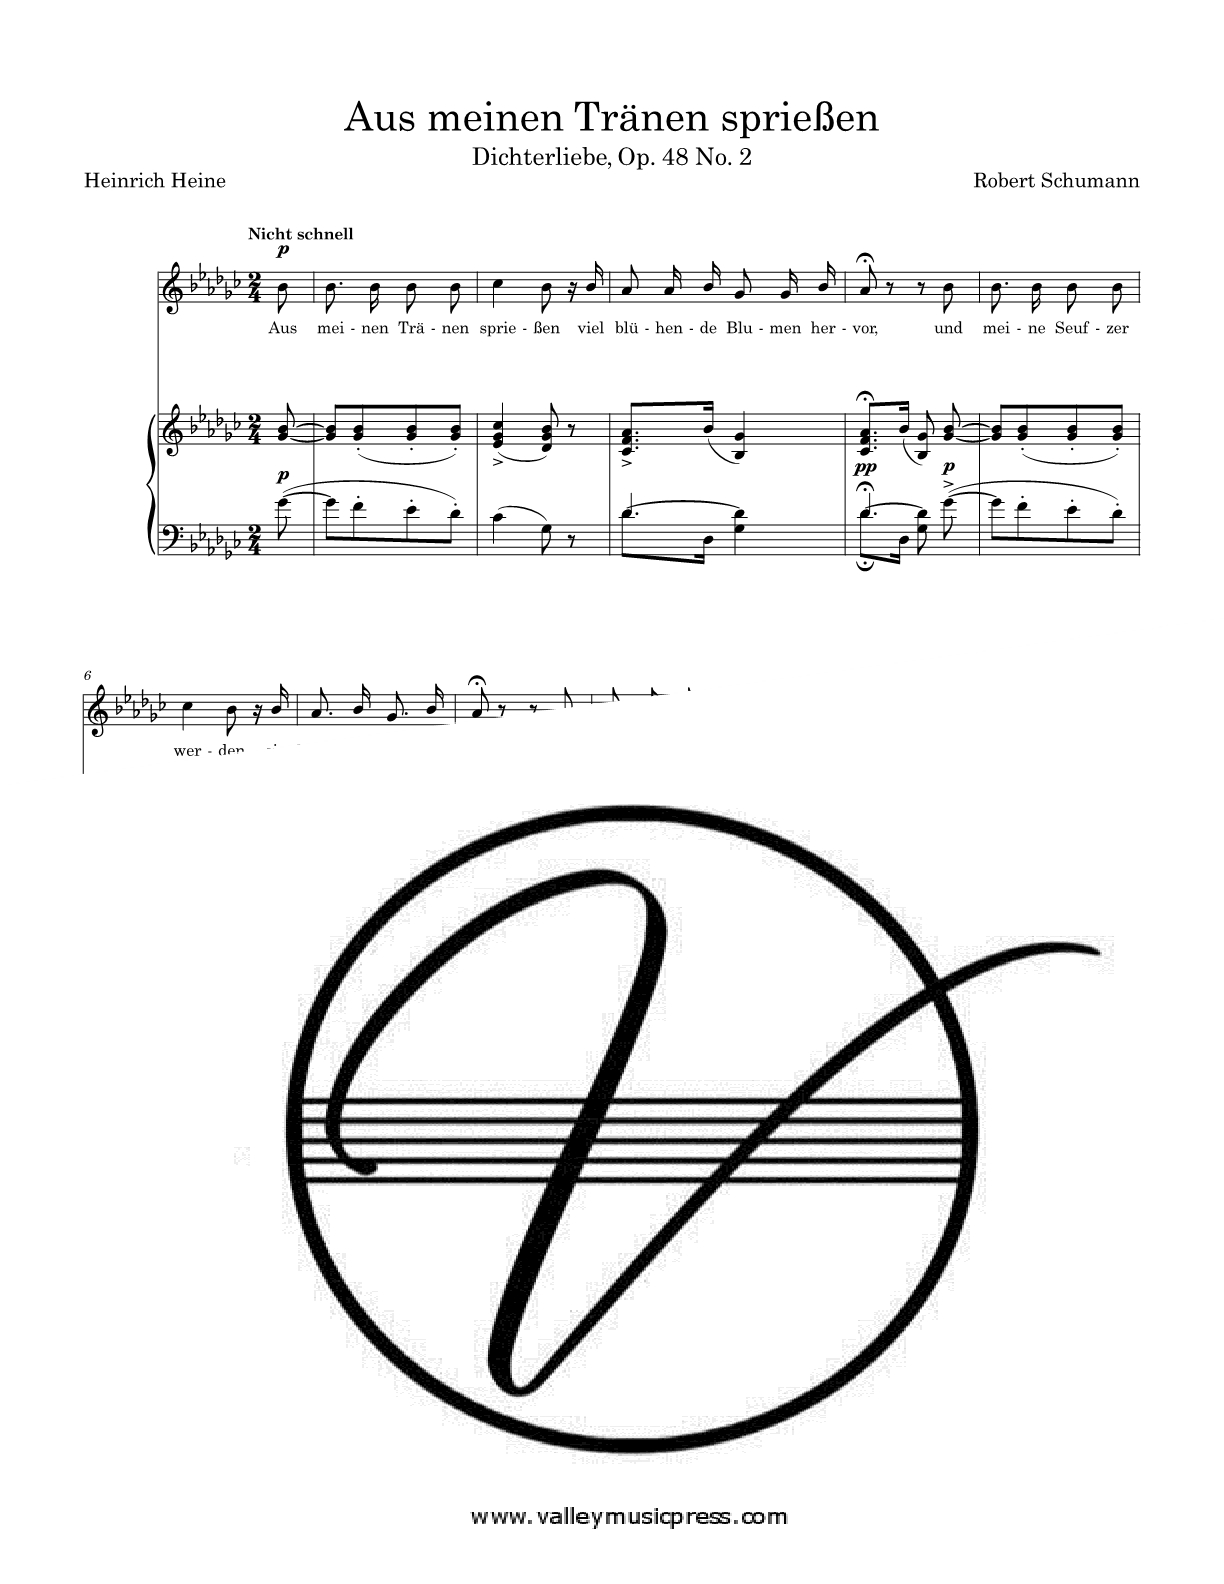 Schumann - Aus meinen Thranen spriessen Op. 48 No. 2 (Voice) - Click Image to Close